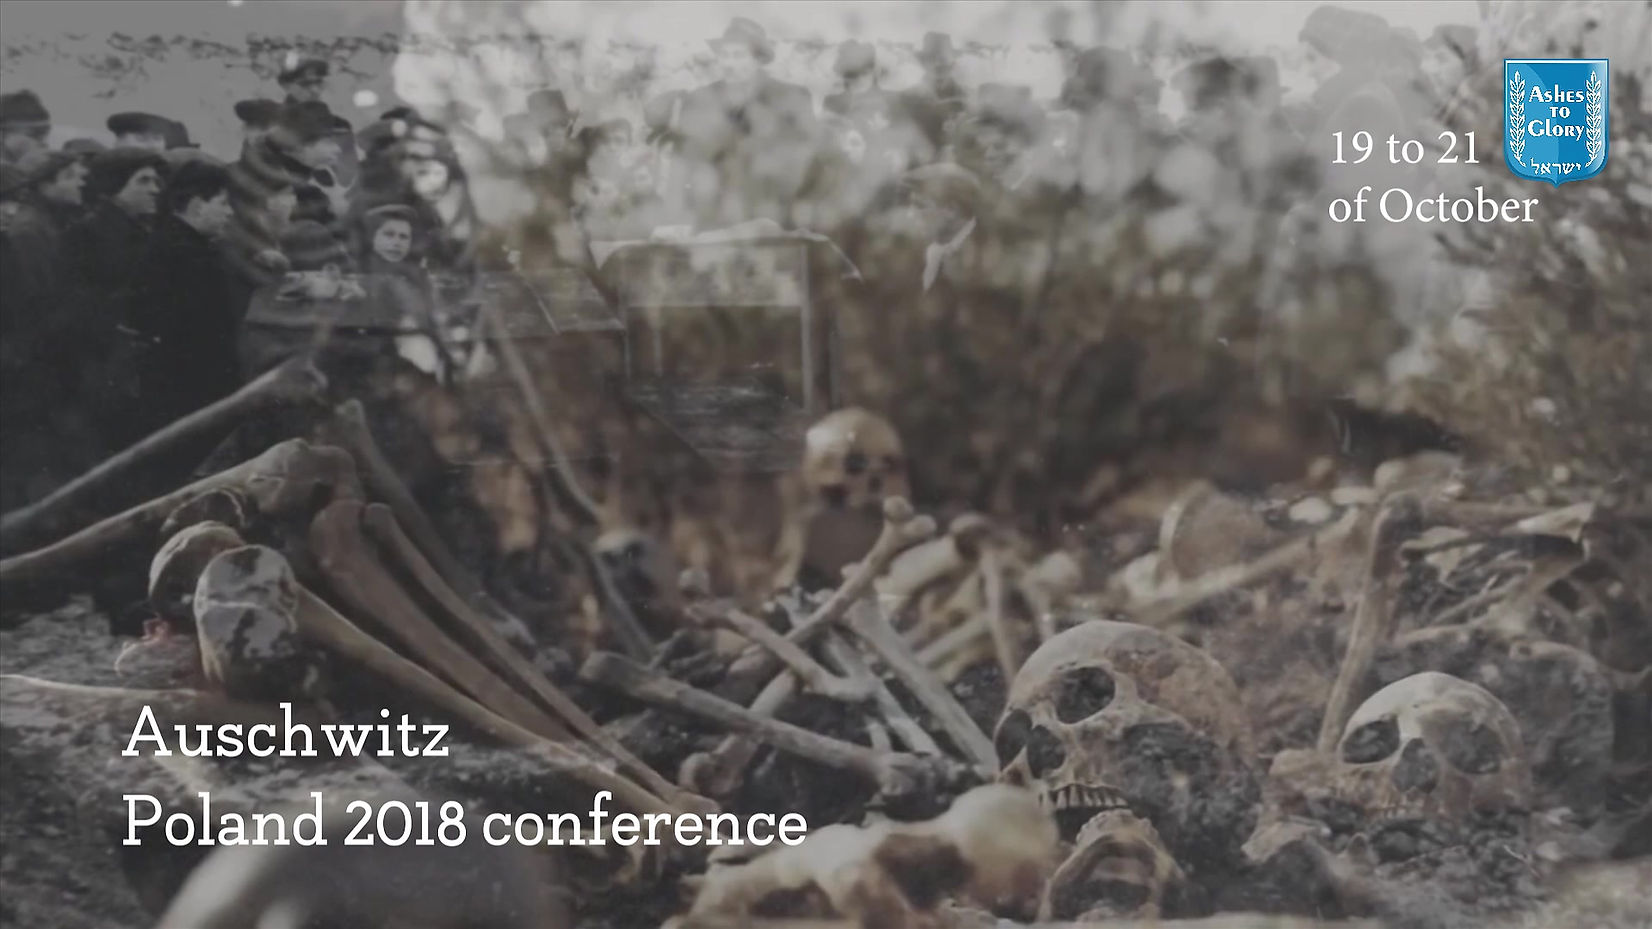 Auschwitz Conference 2018